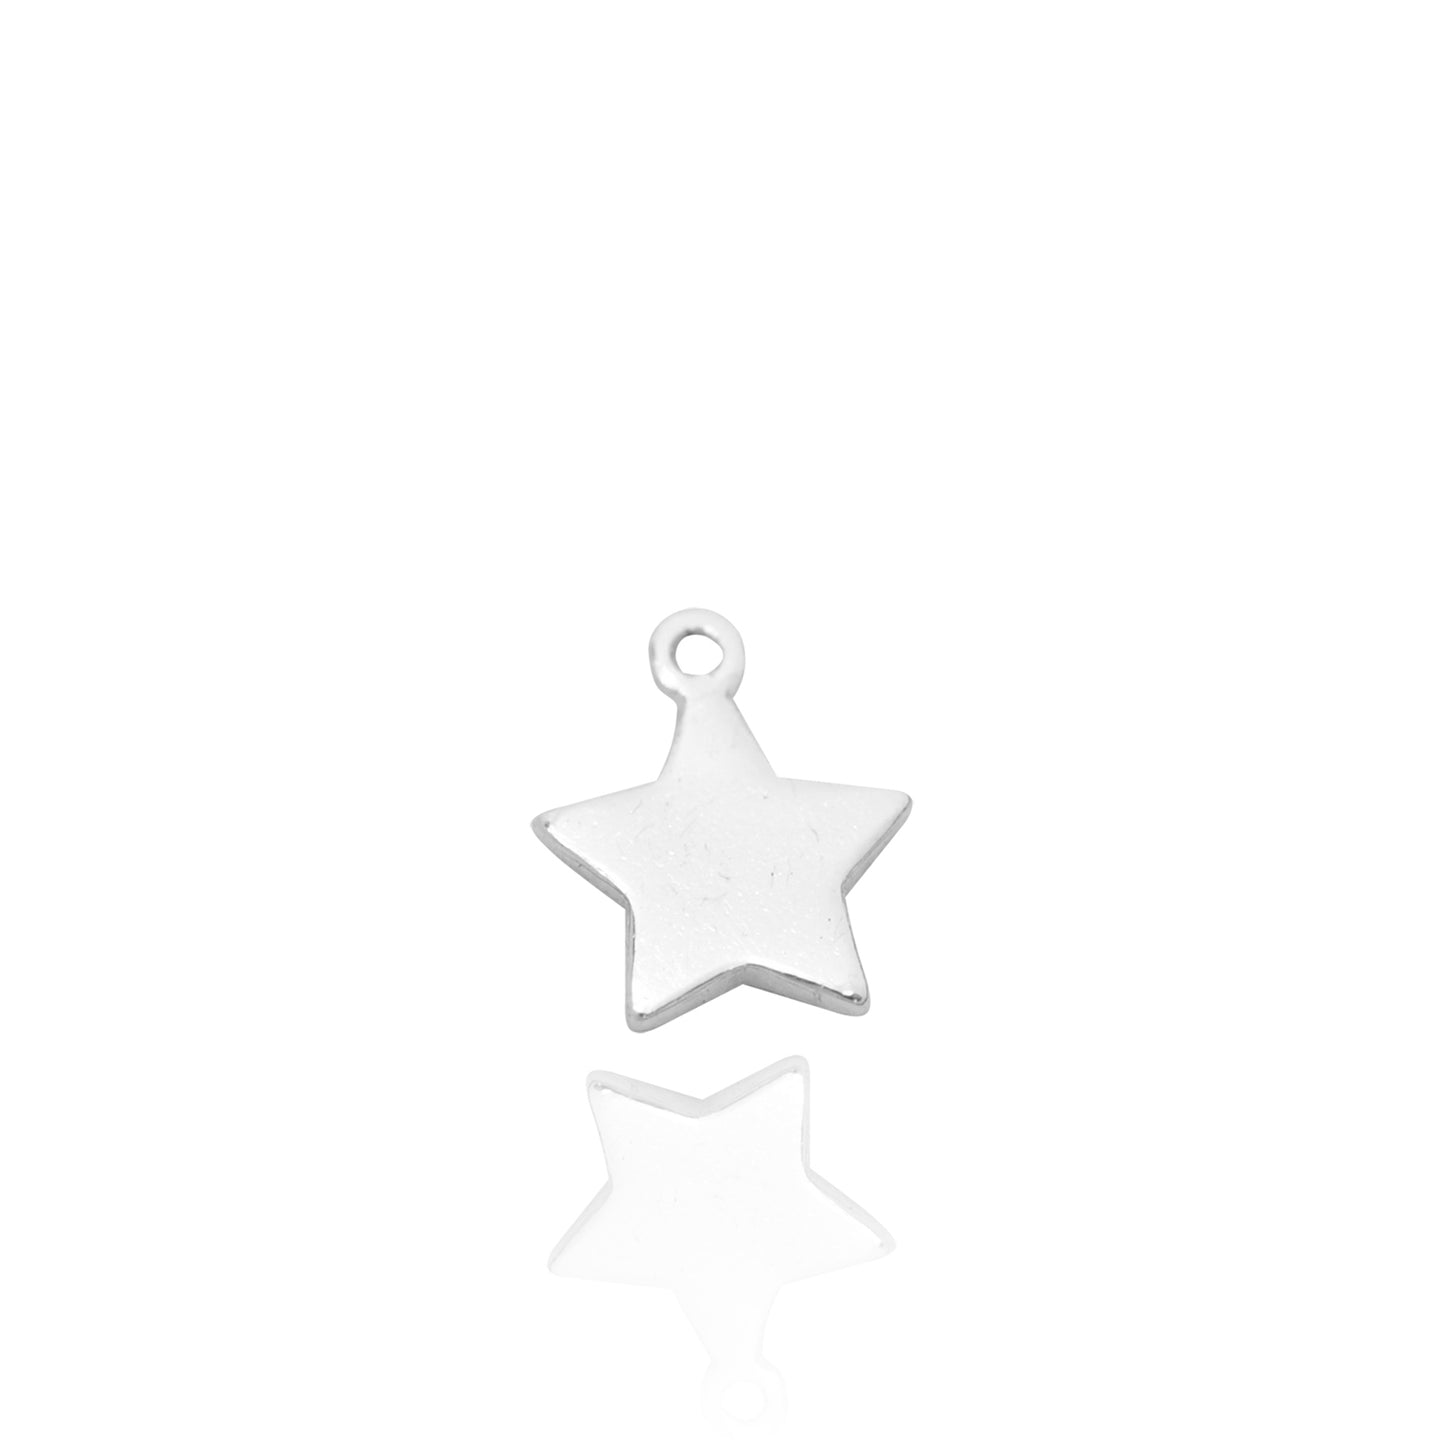 Mini star pendant / 925 silver / 5 mm